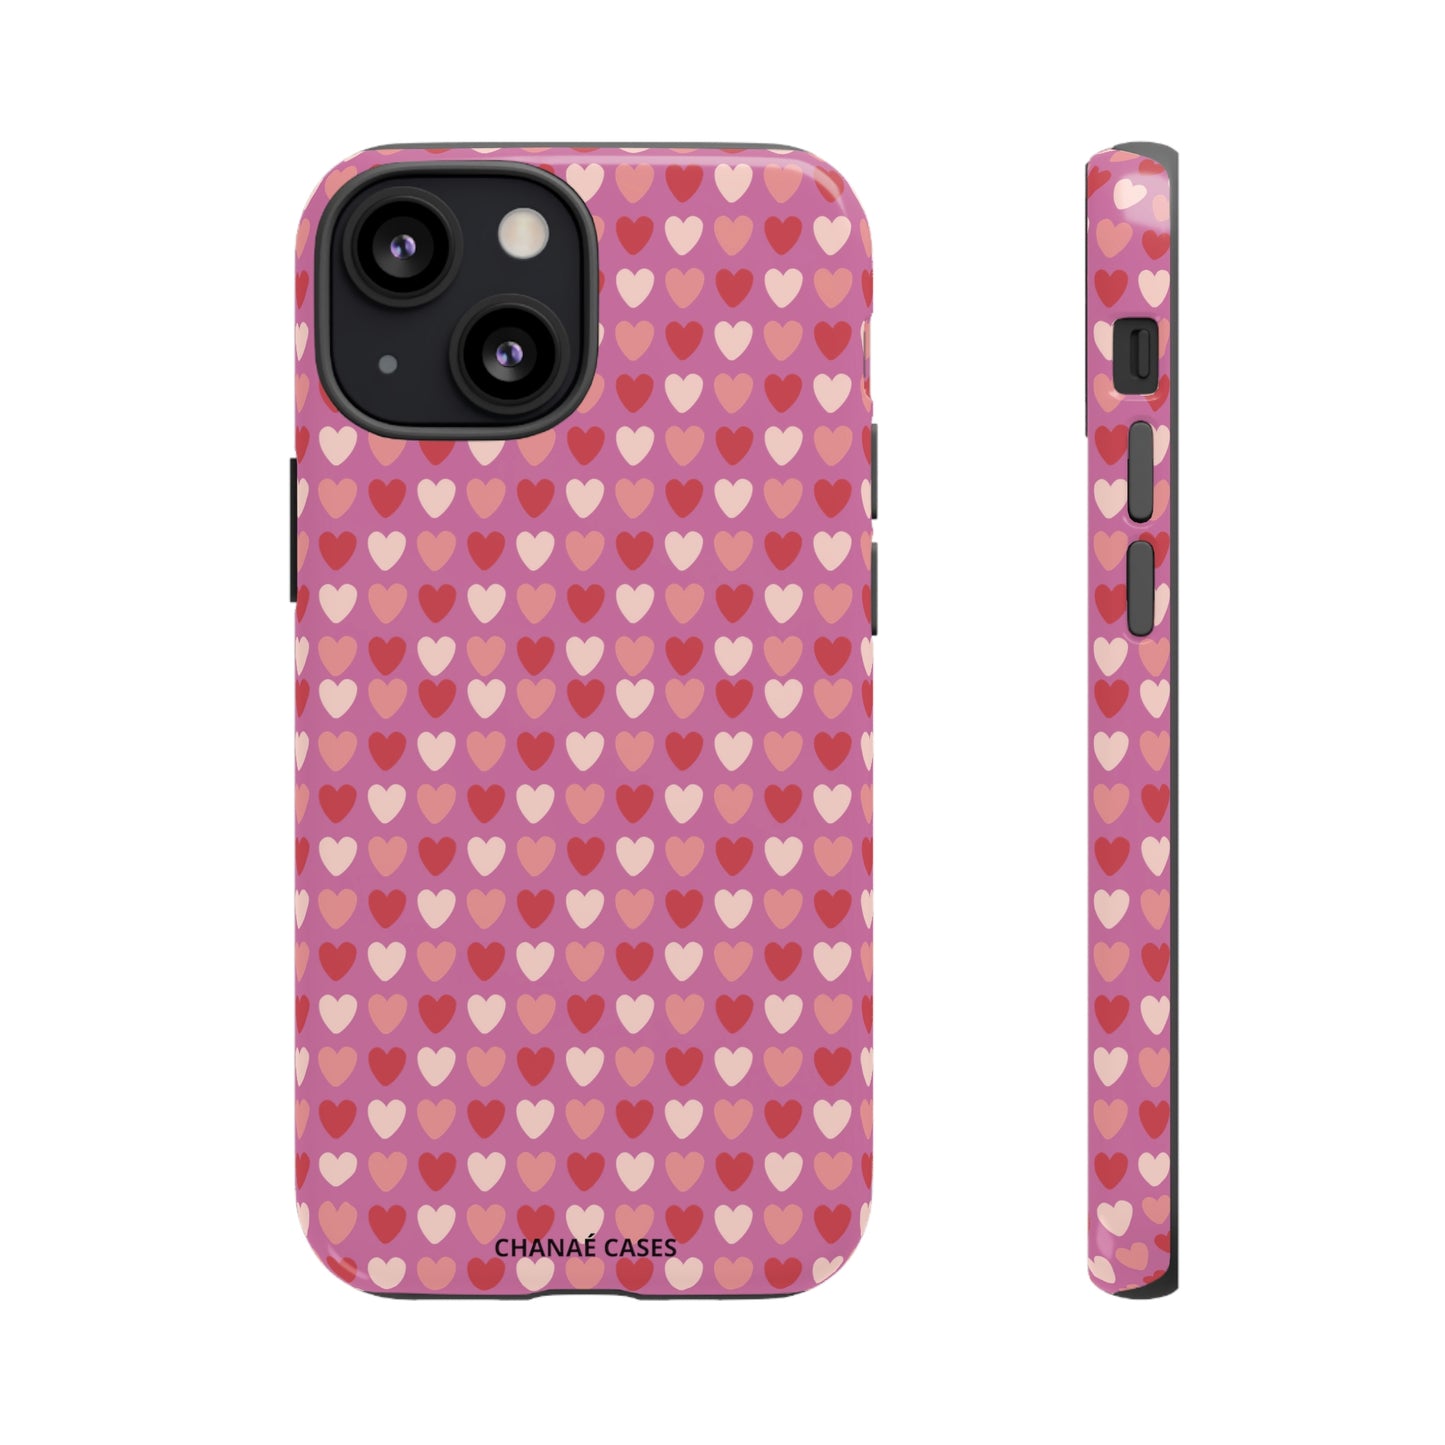 Love Eyes iPhone "Tough" Case (Pink)